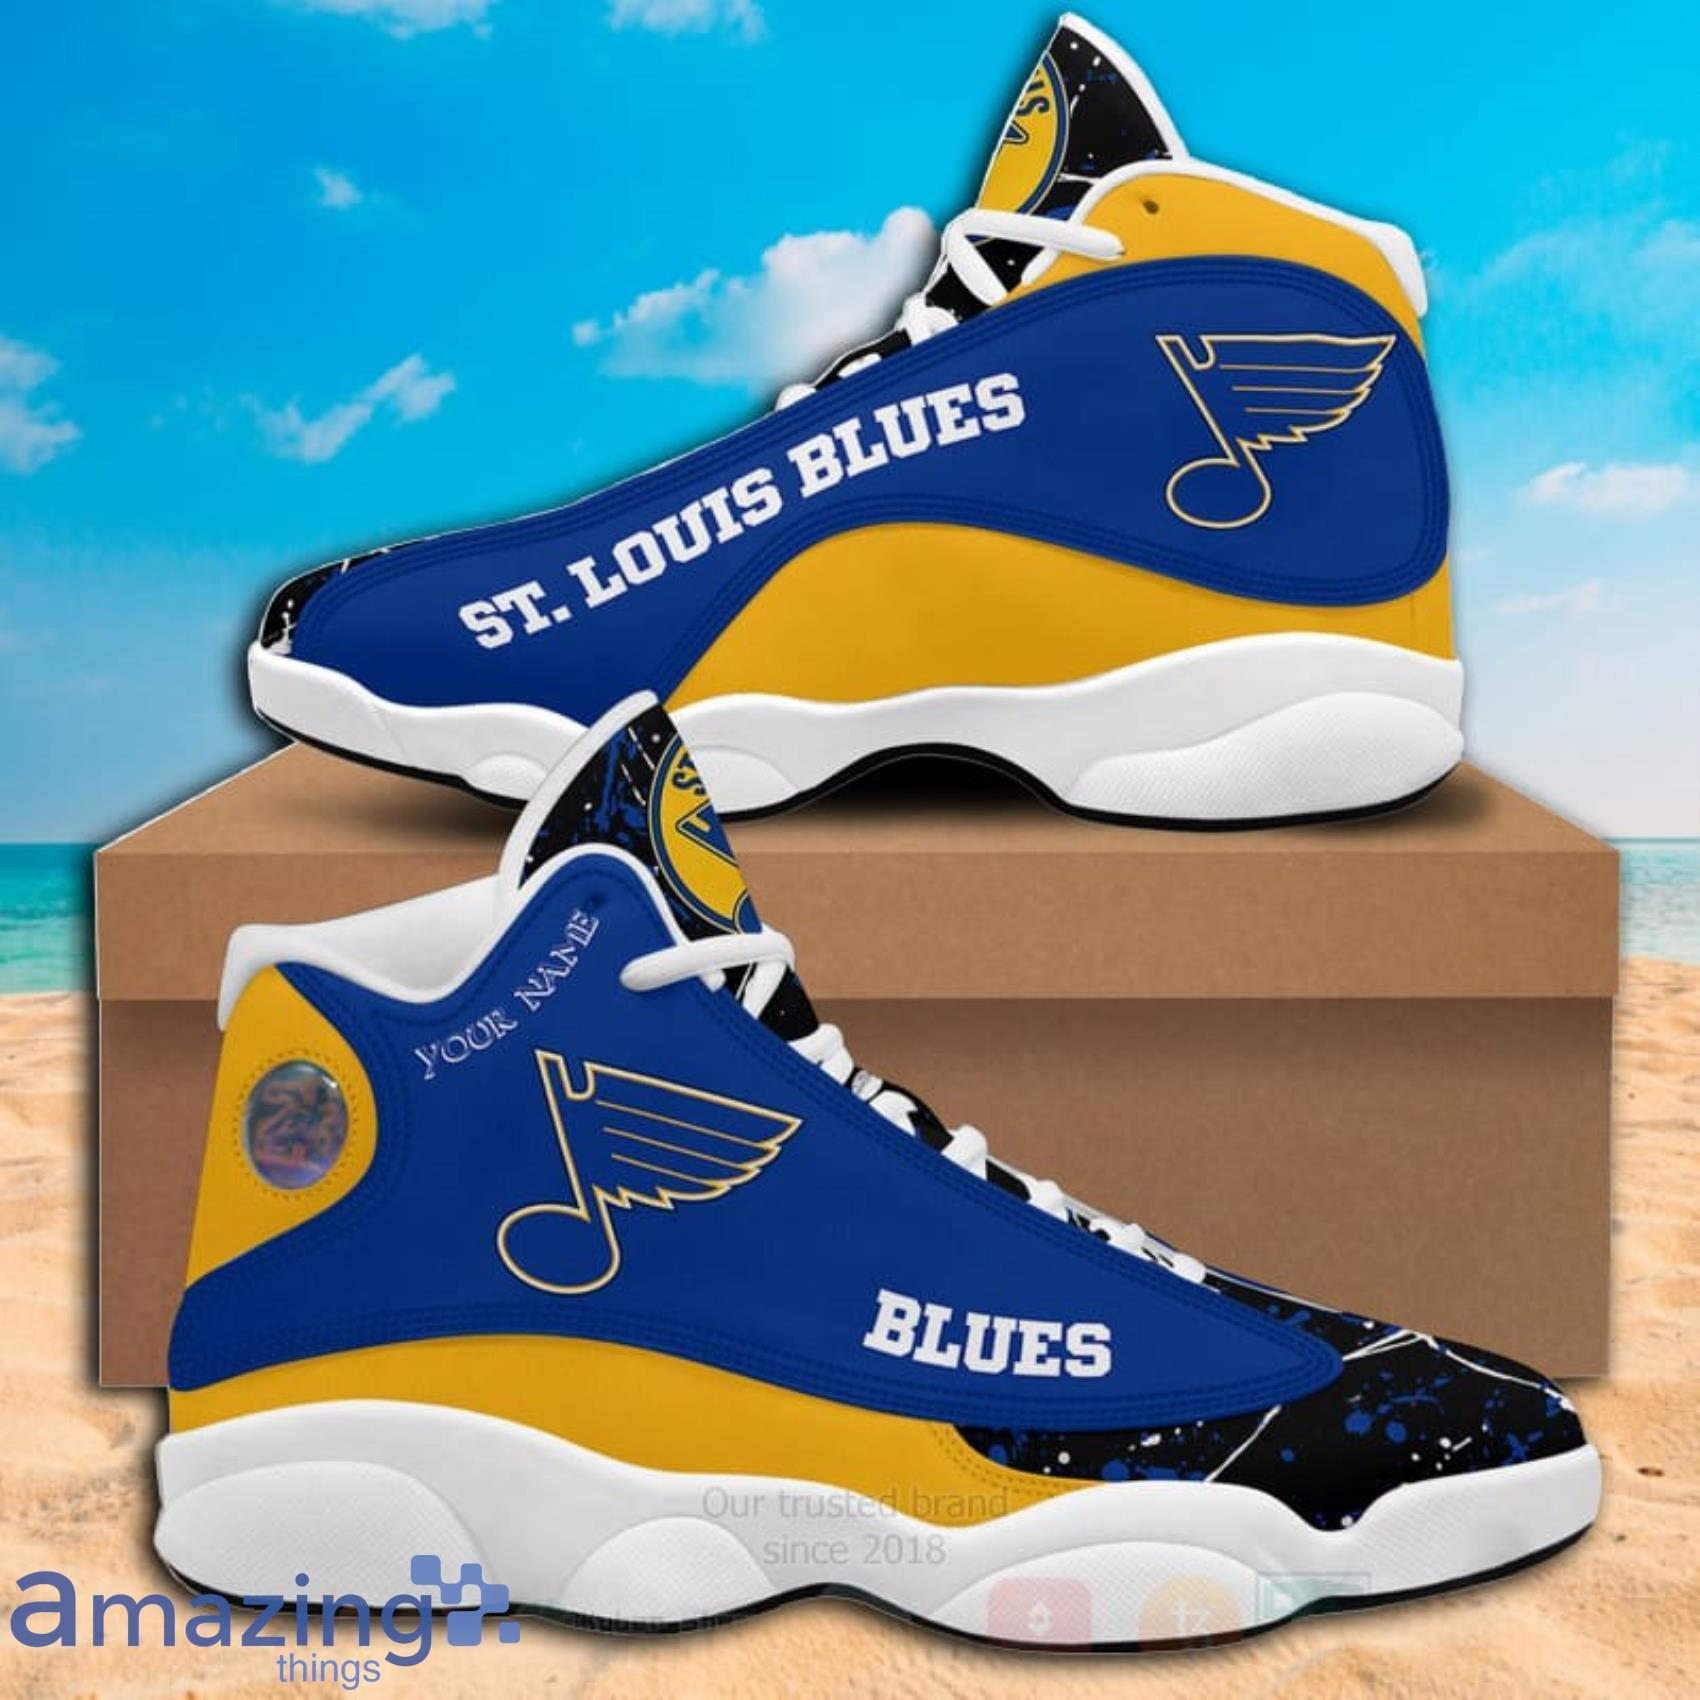 St. Louis Blues NHL Fan Shoes for sale